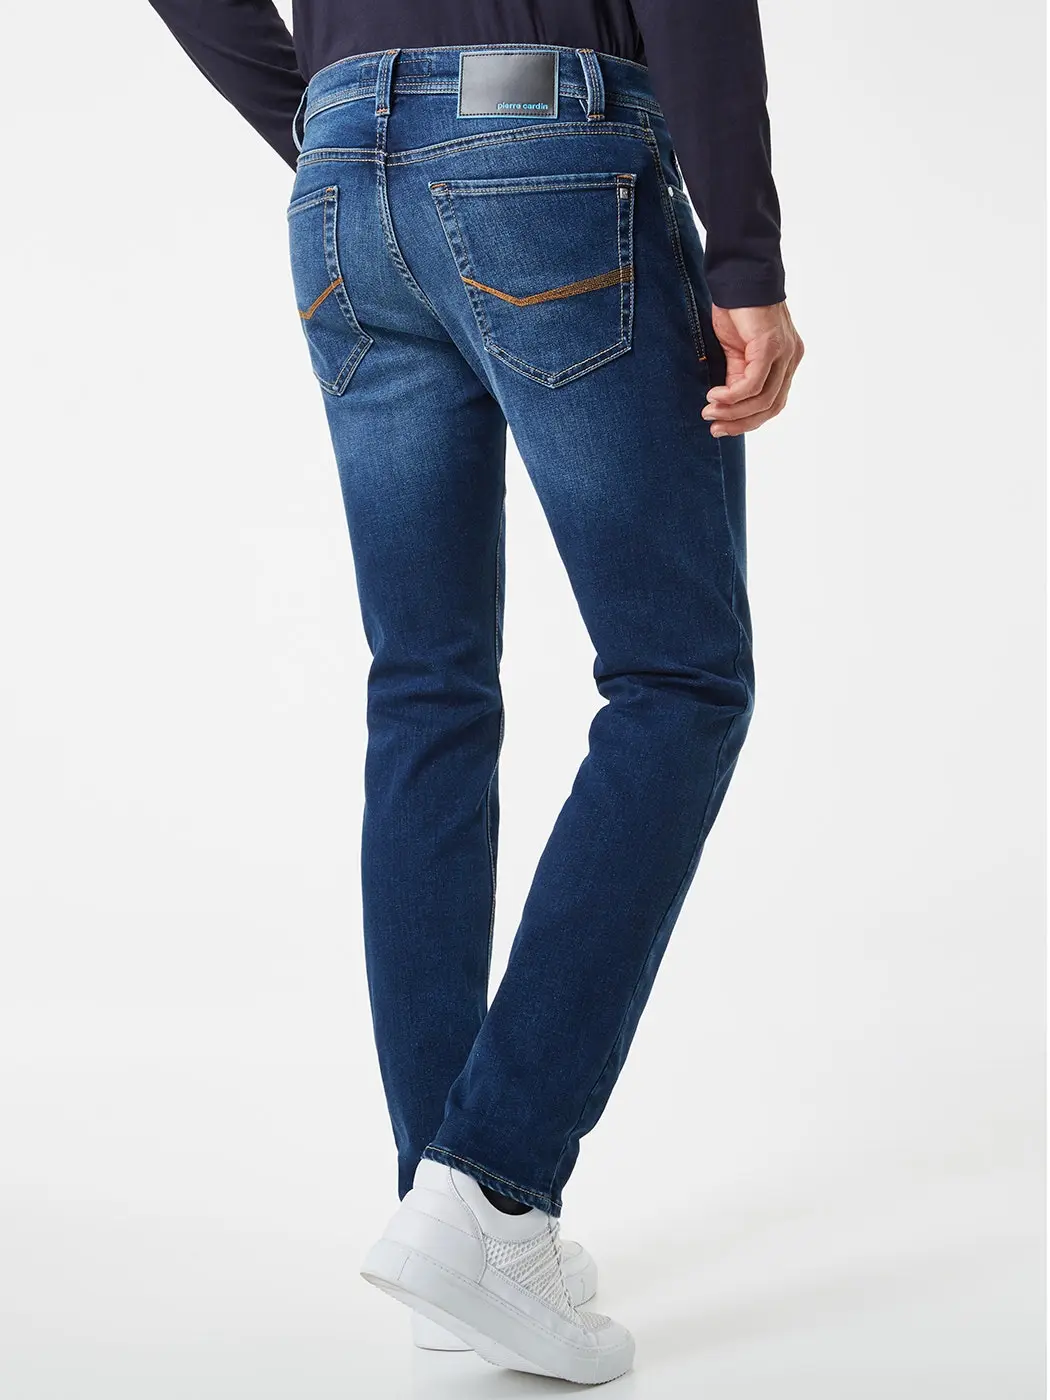 Belang bezorgdheid Bijwonen pierre cardin heren jeans | Smit mode